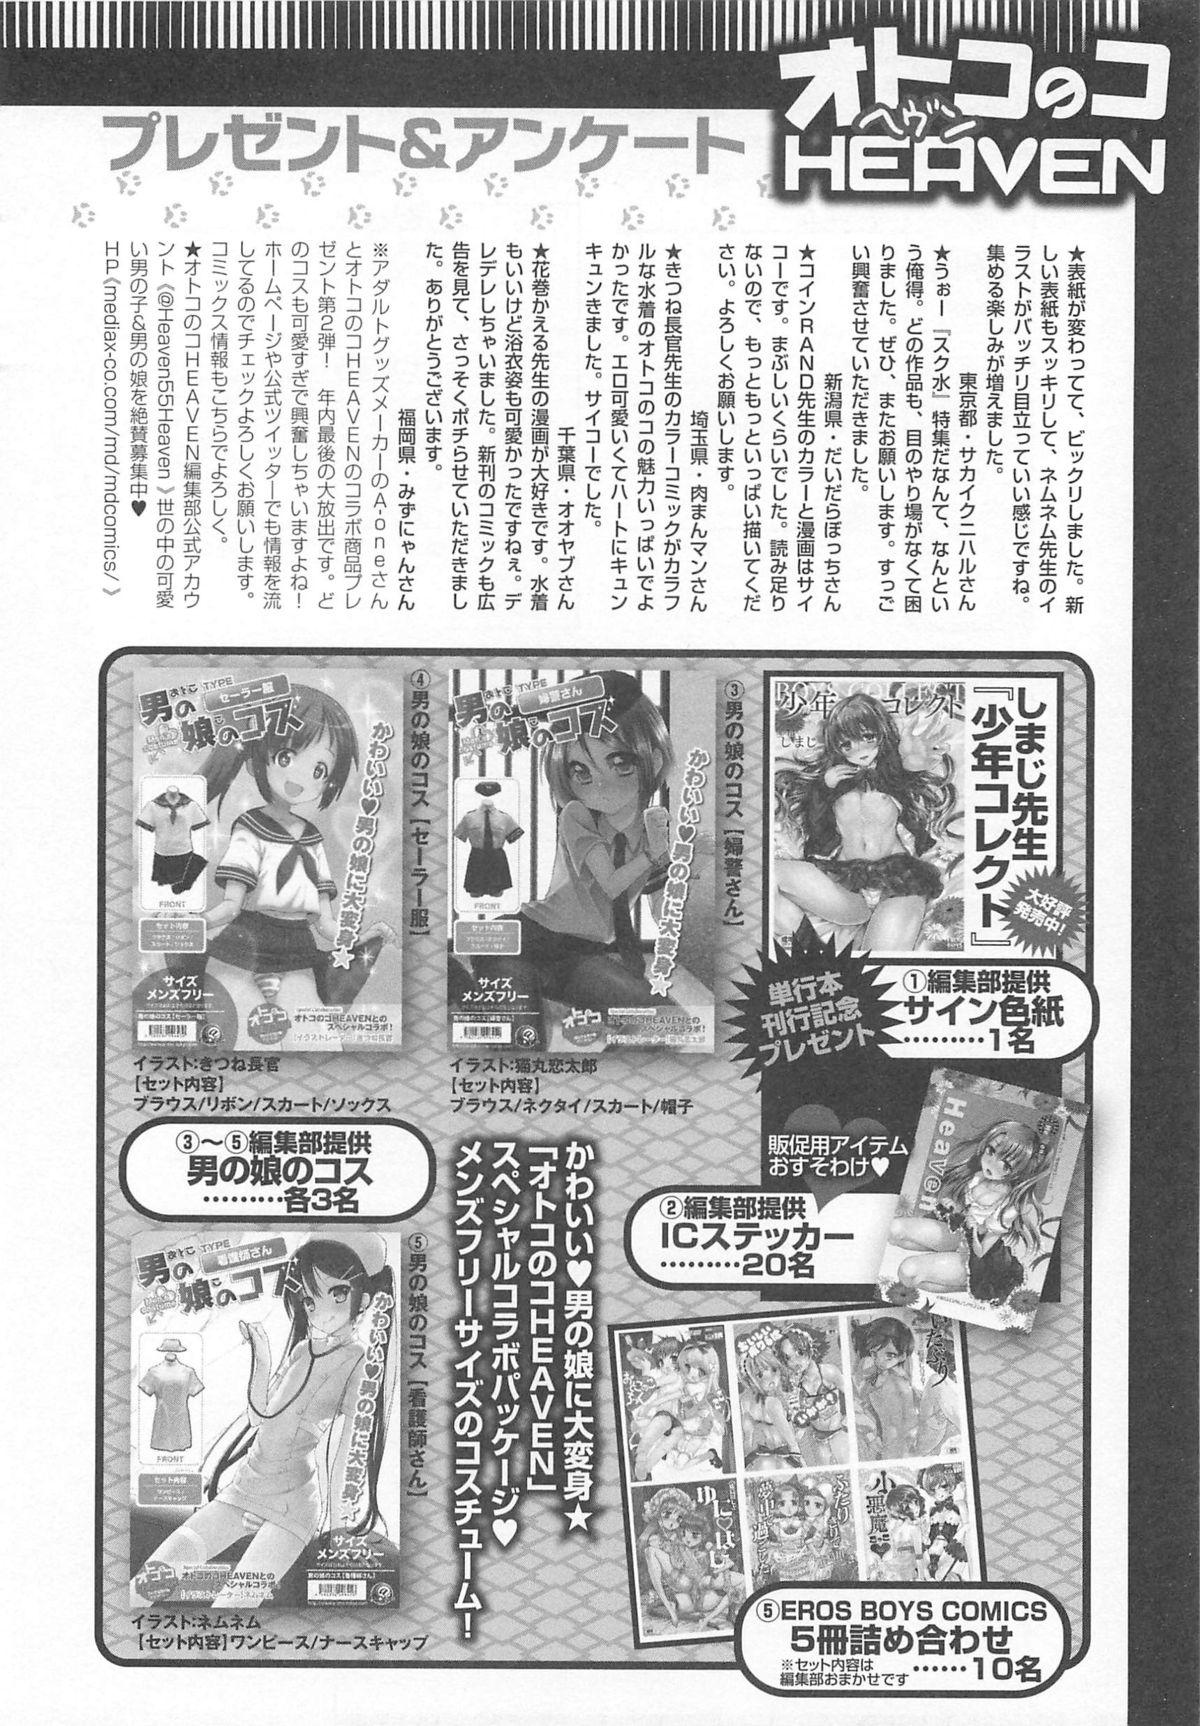 Otokonoko HEAVEN Vol.13 Junjou Bitch★Otokonoko 187